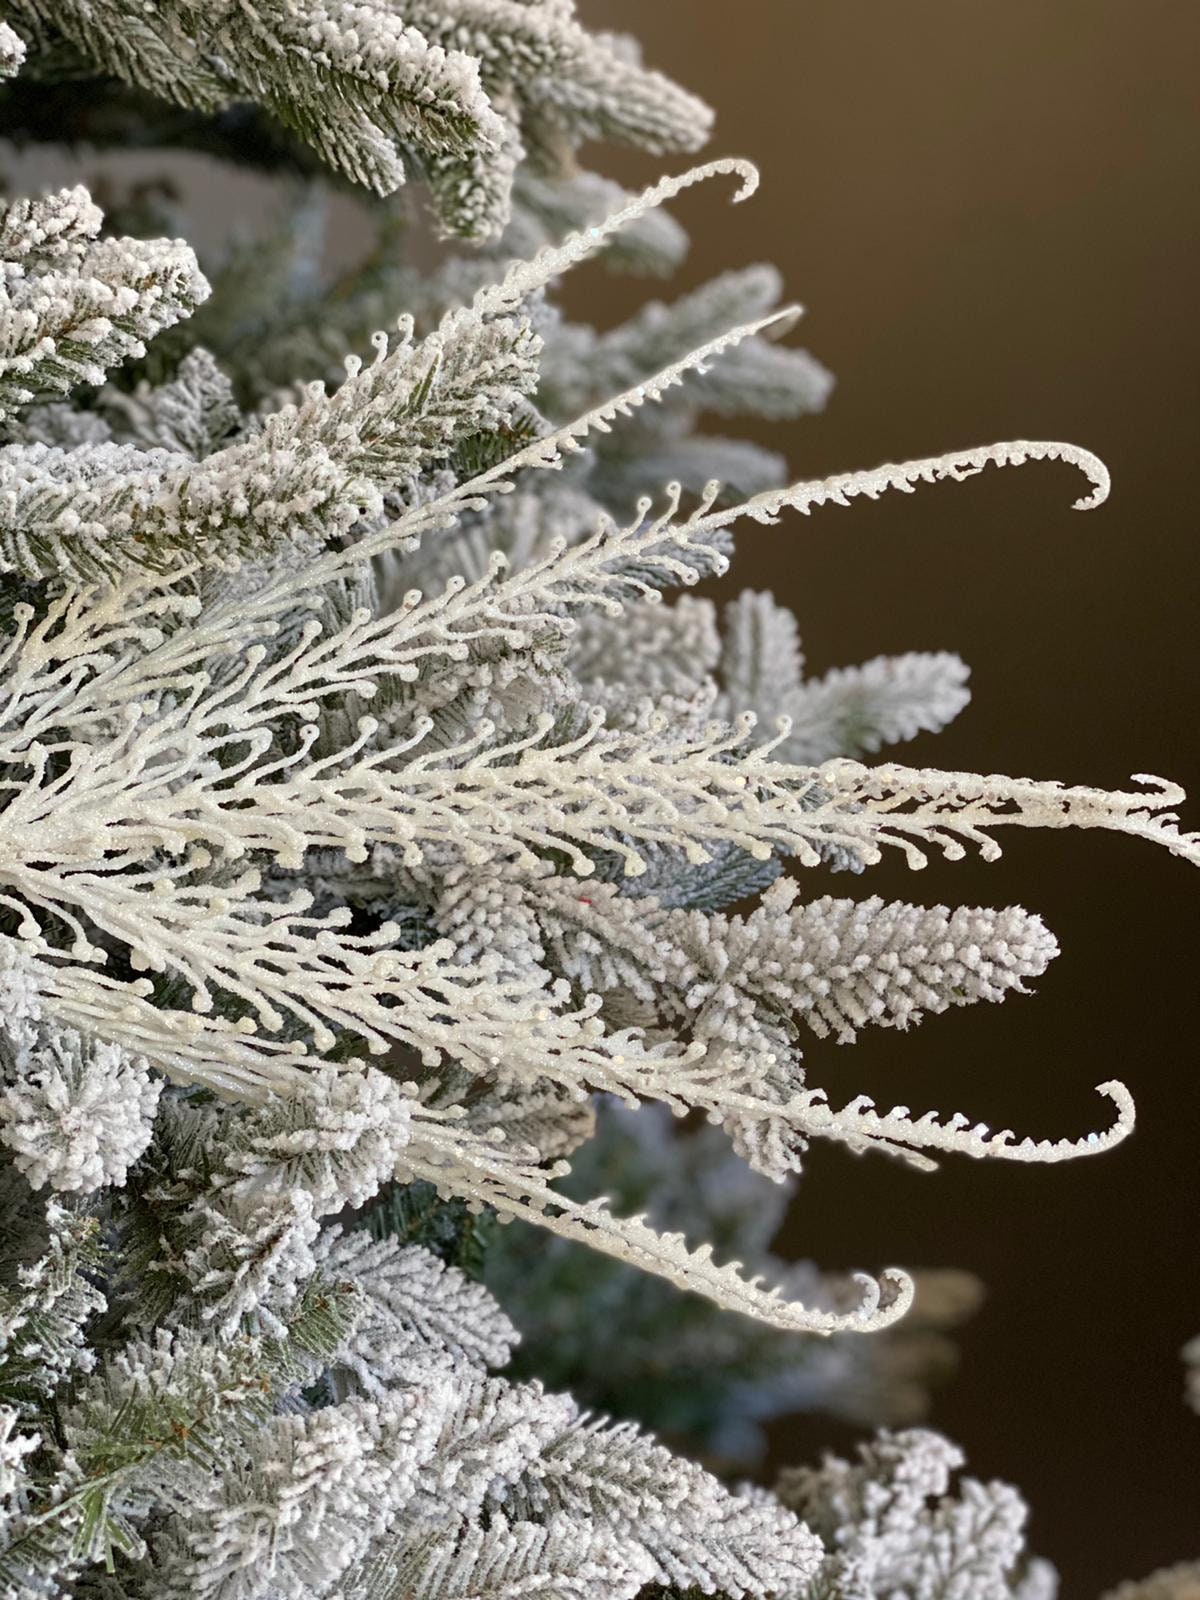 21" glitter/sequin dragon fern bush white